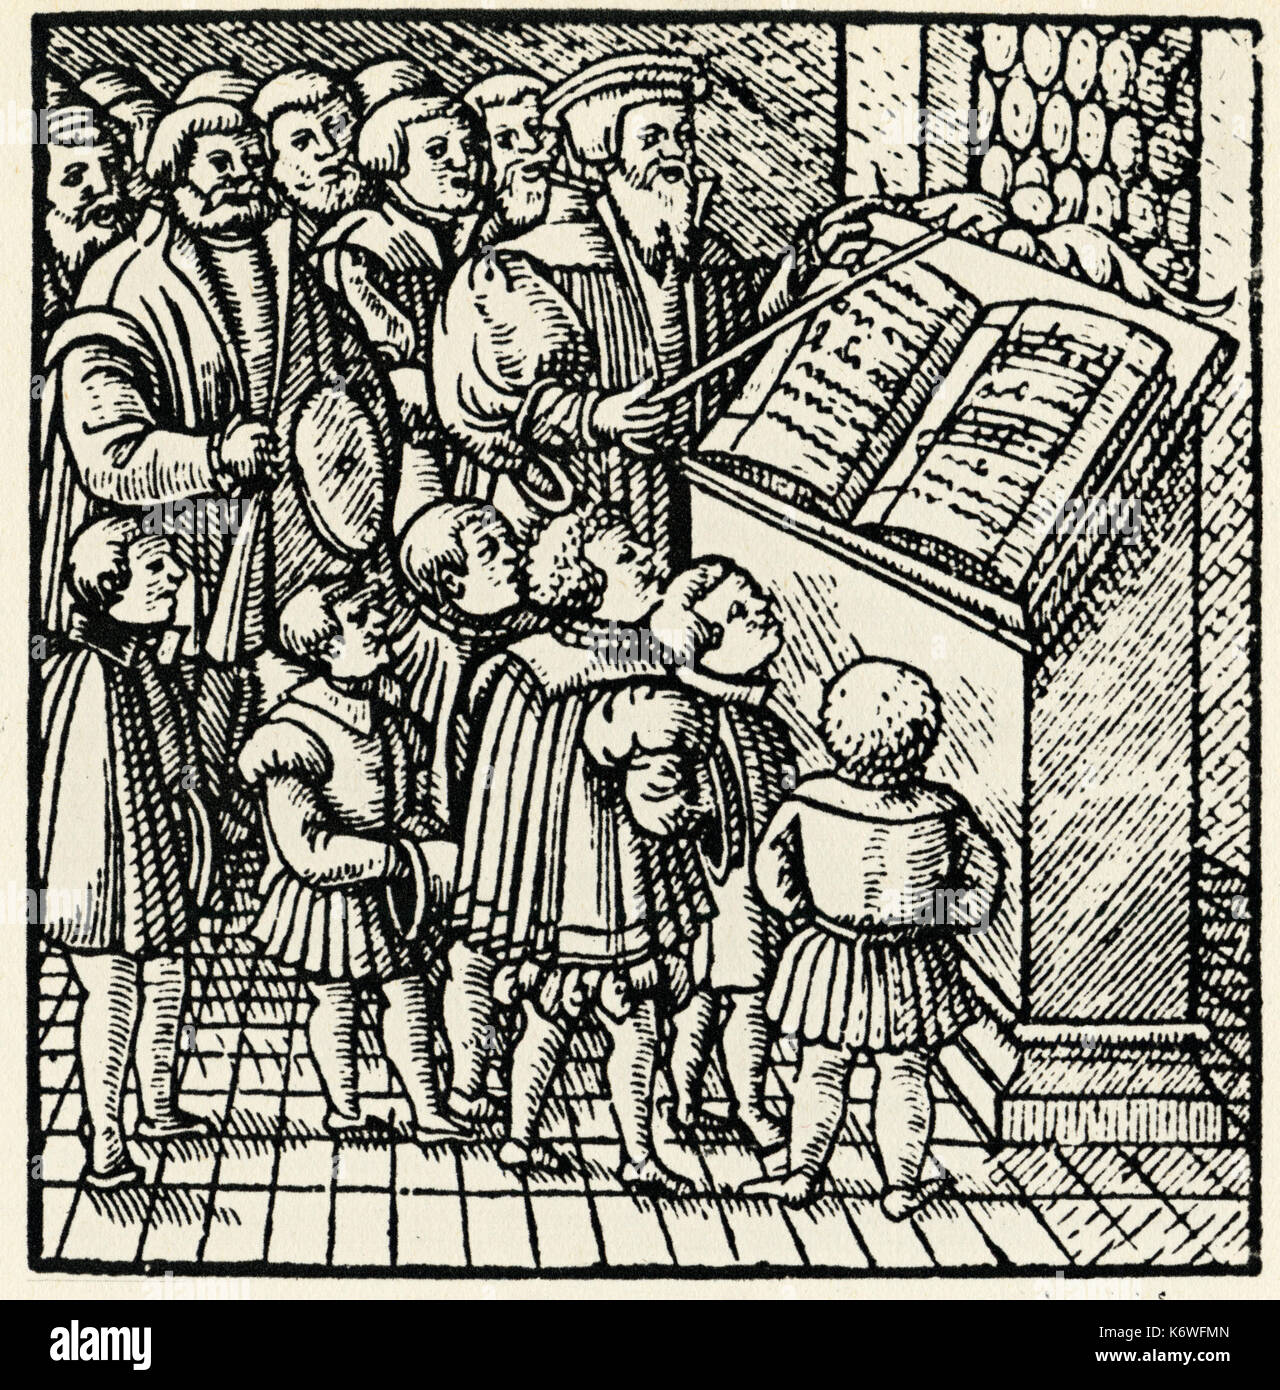 Coro - siglo XVI xilografía - Salmos cantando en la Iglesia. Hombres y Chicos cantando desde gran salterio Foto de stock